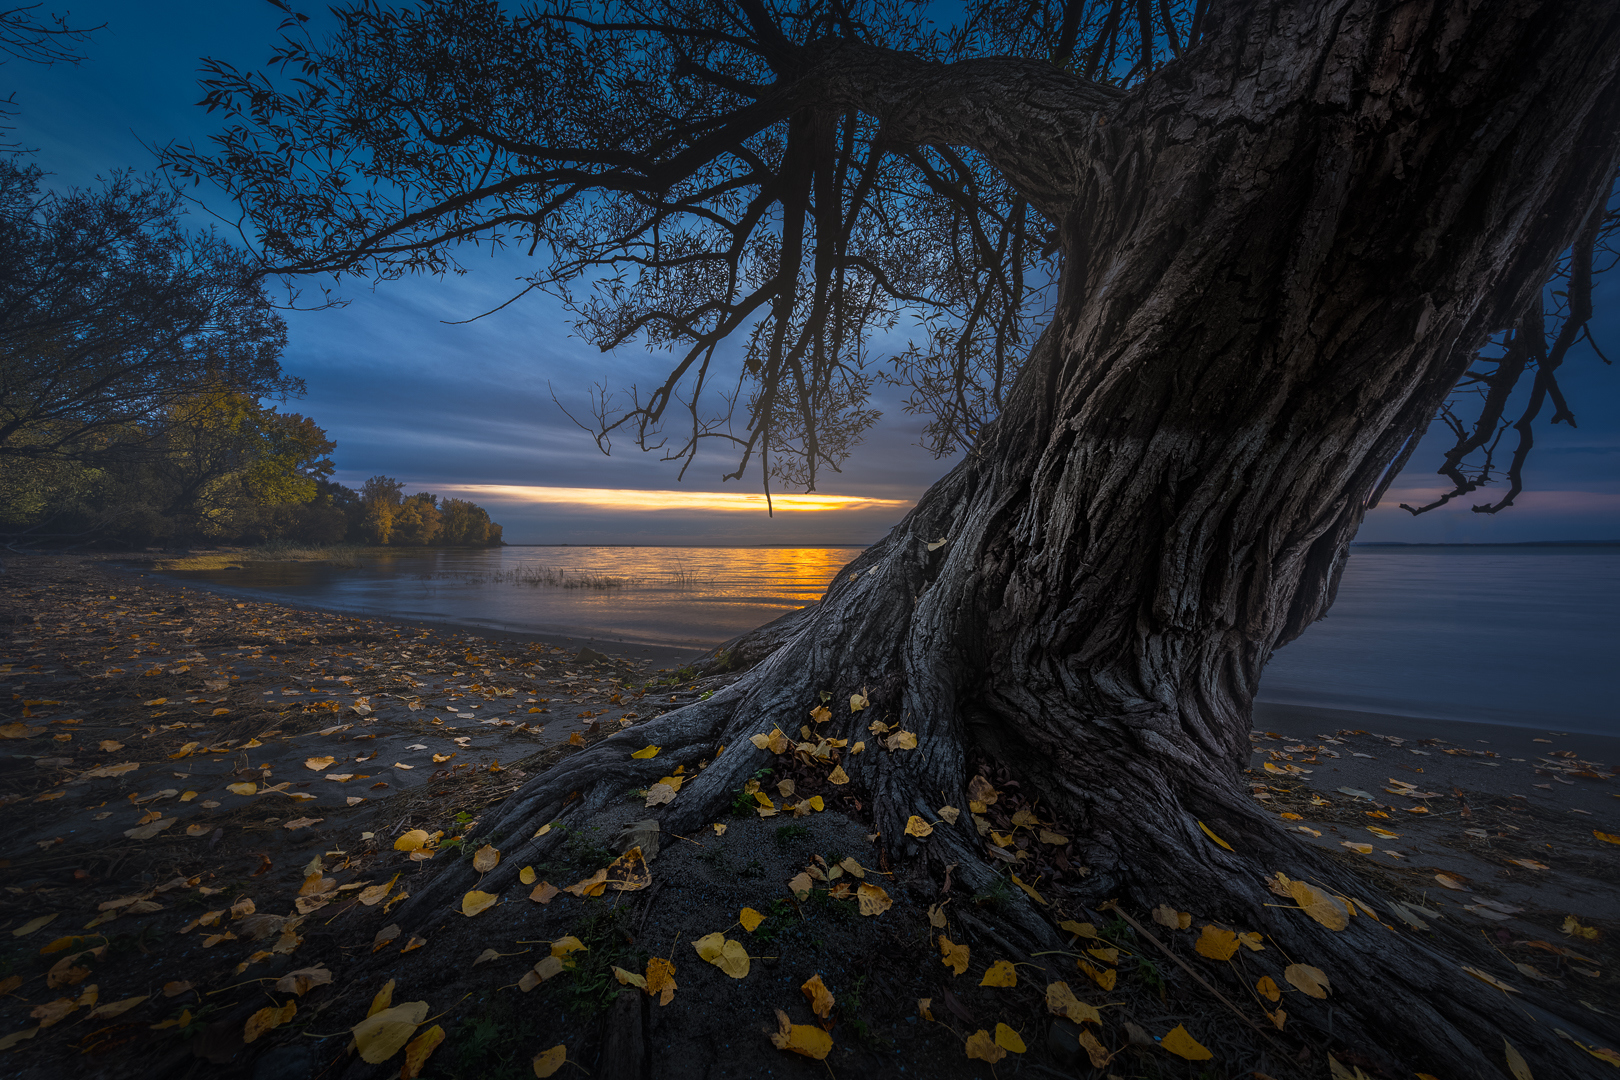 "L'arbre est dans ses feuilles" Yves Kéroack Club photo Impression 1er prix thème: Nature